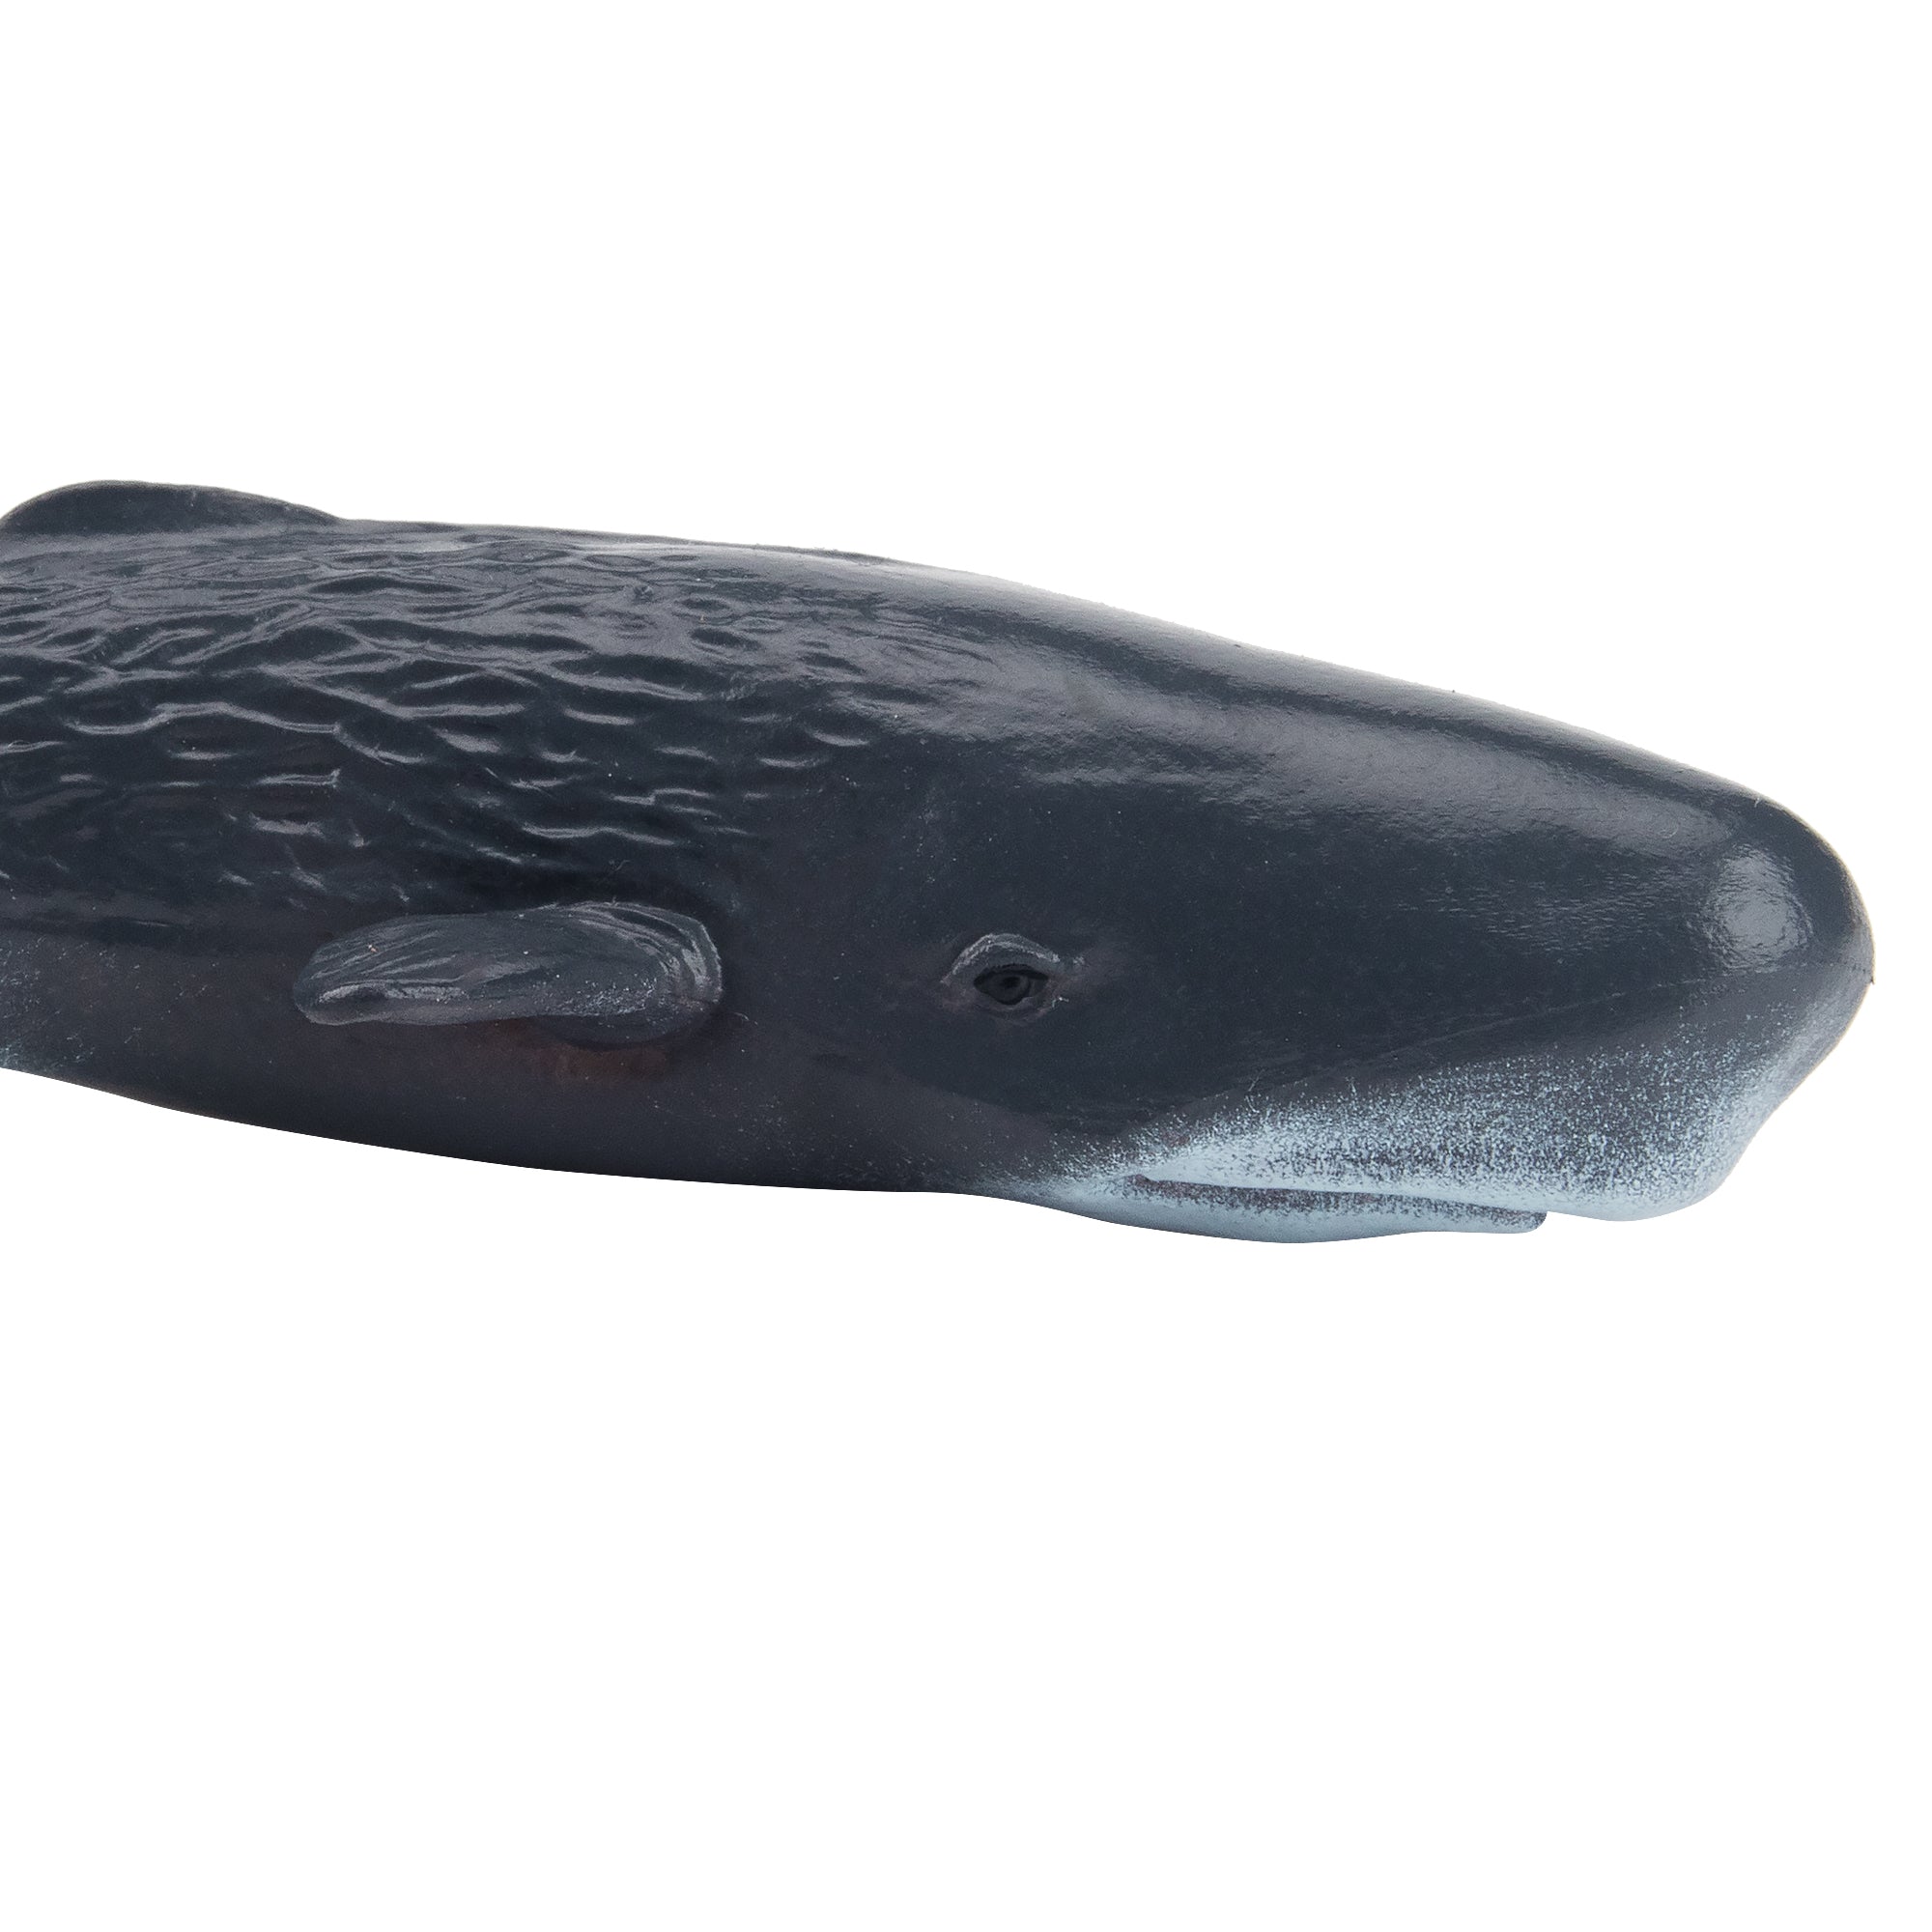 Toymany Sperm Whale Figurine Toy-detail